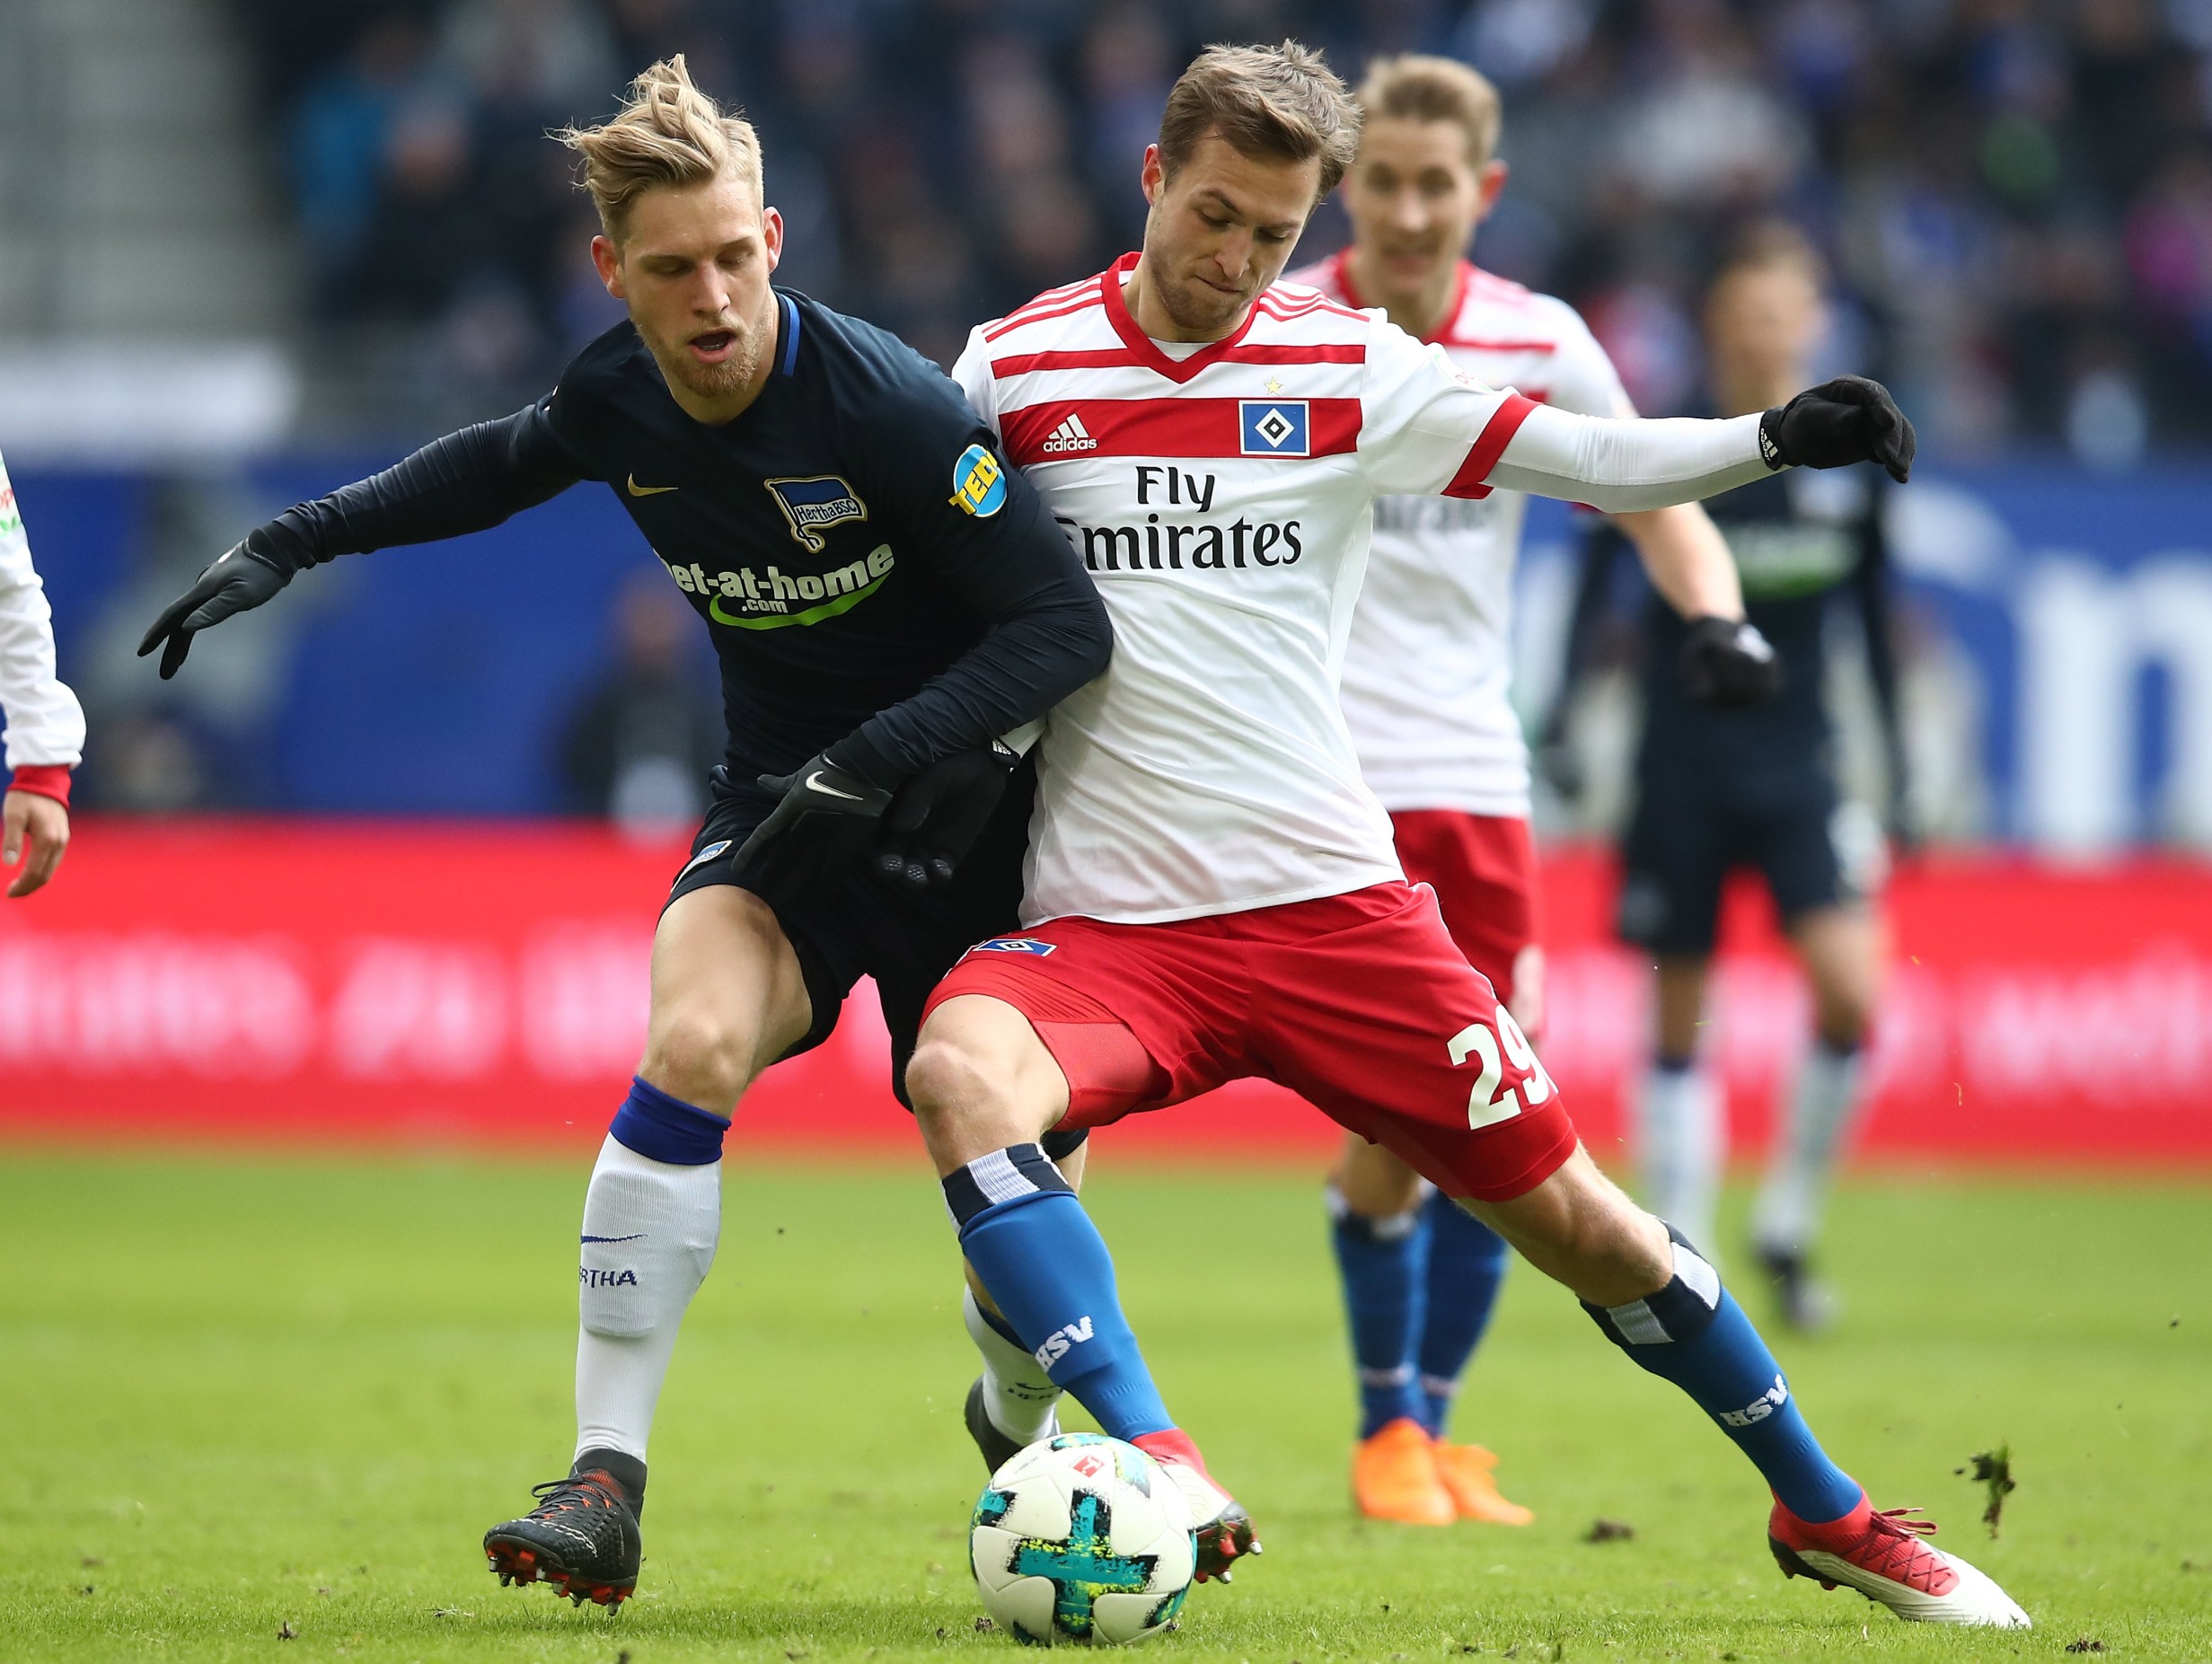 Matti Steinmann in action for Hamburg in the Bundesliga